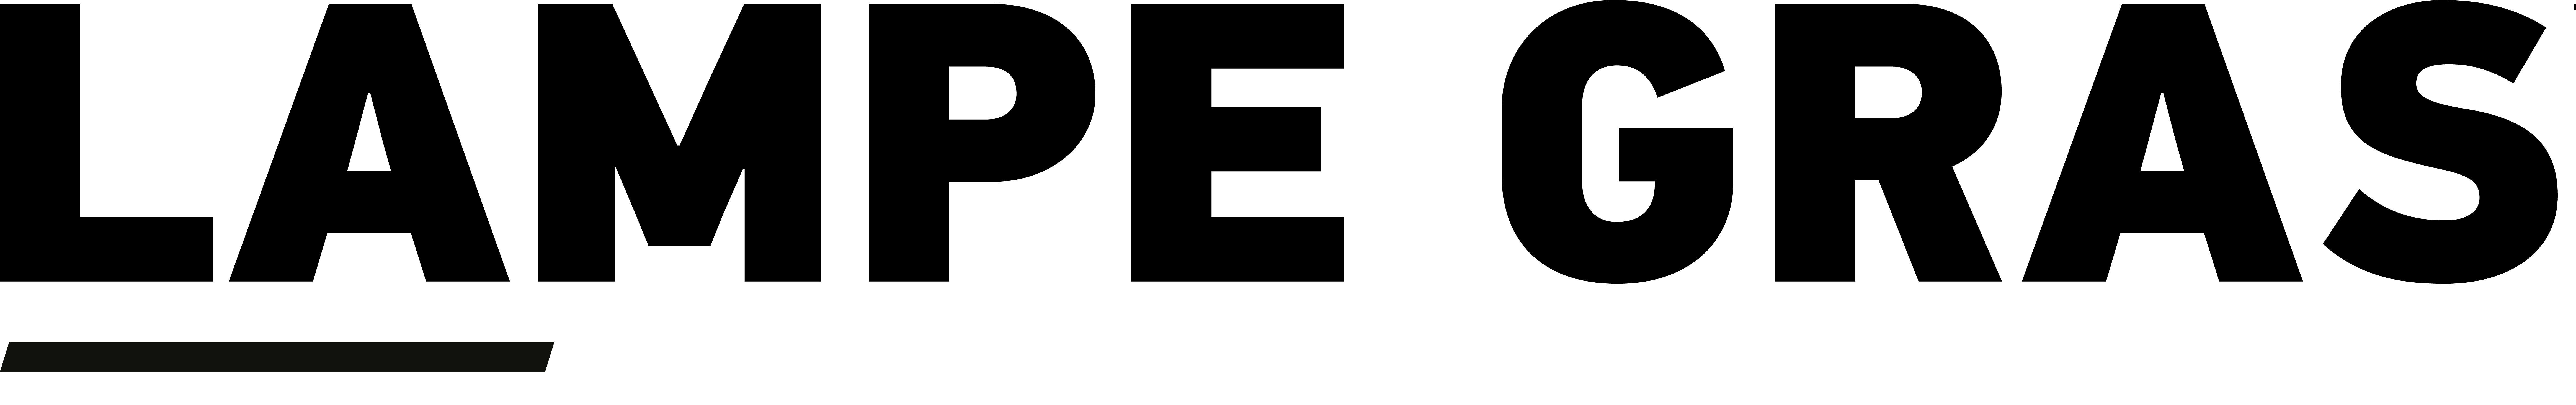 Логотип Lampegras